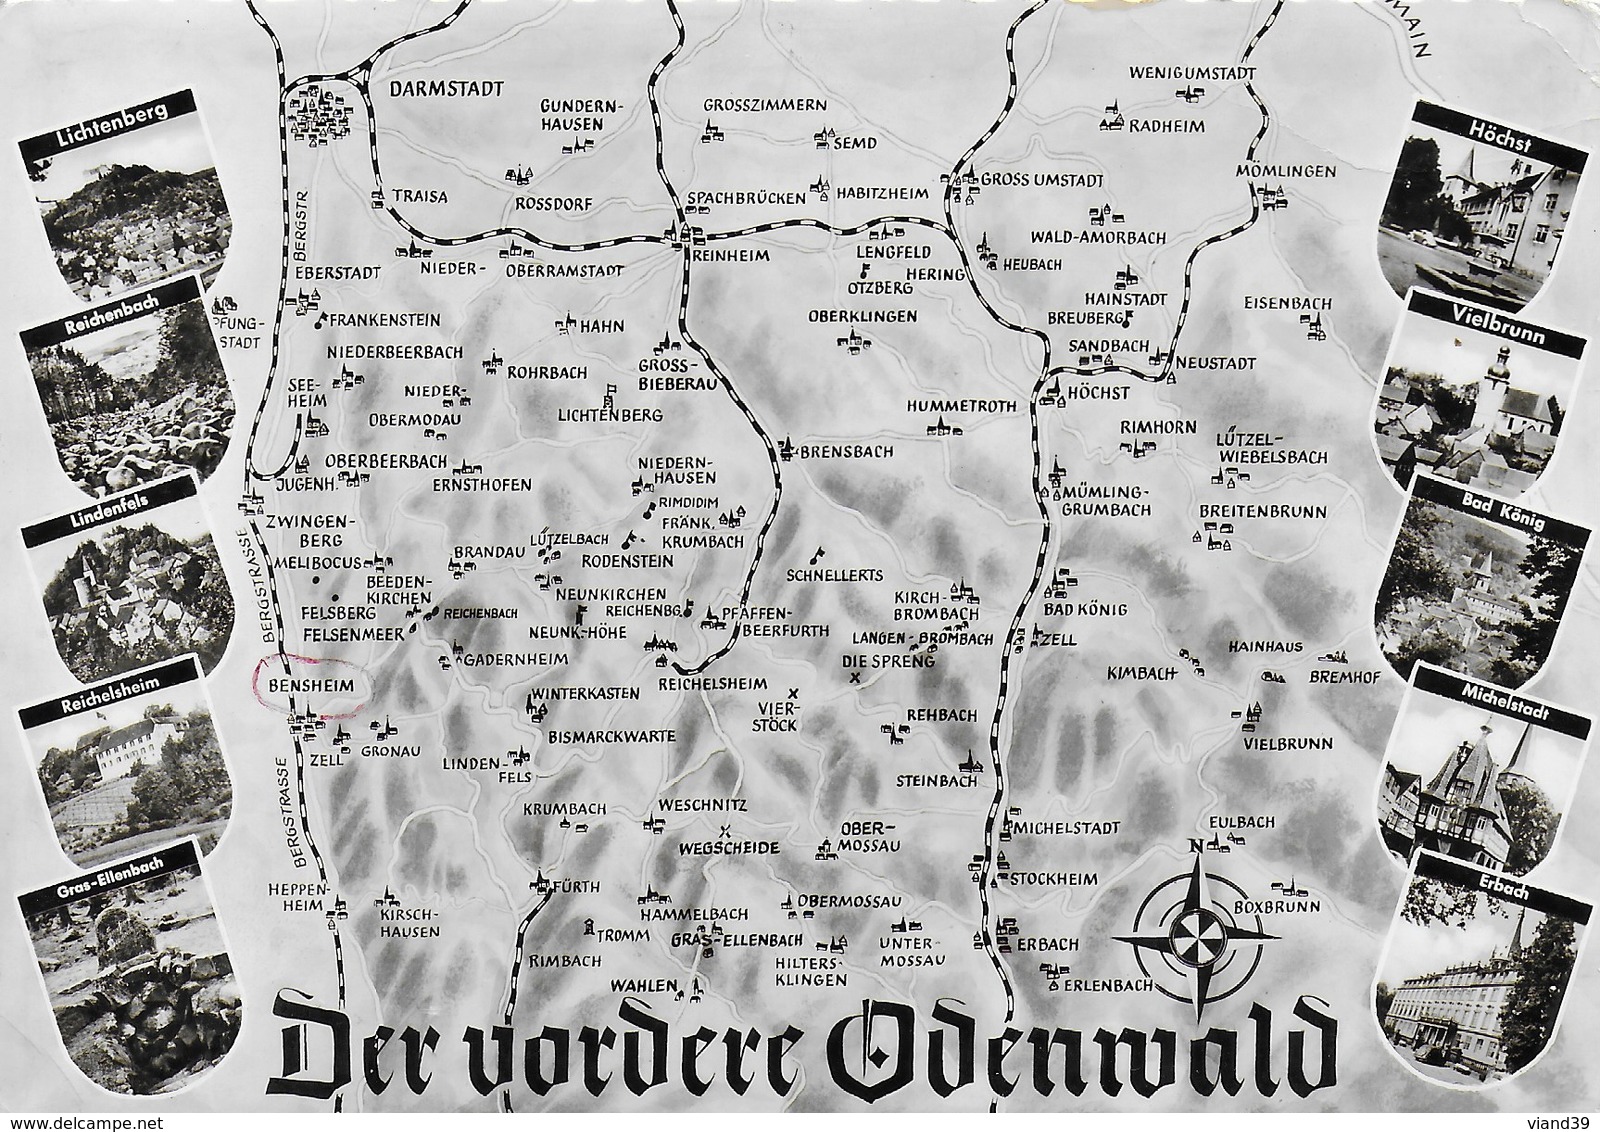 Der Vordere Odenwald - Odenwald